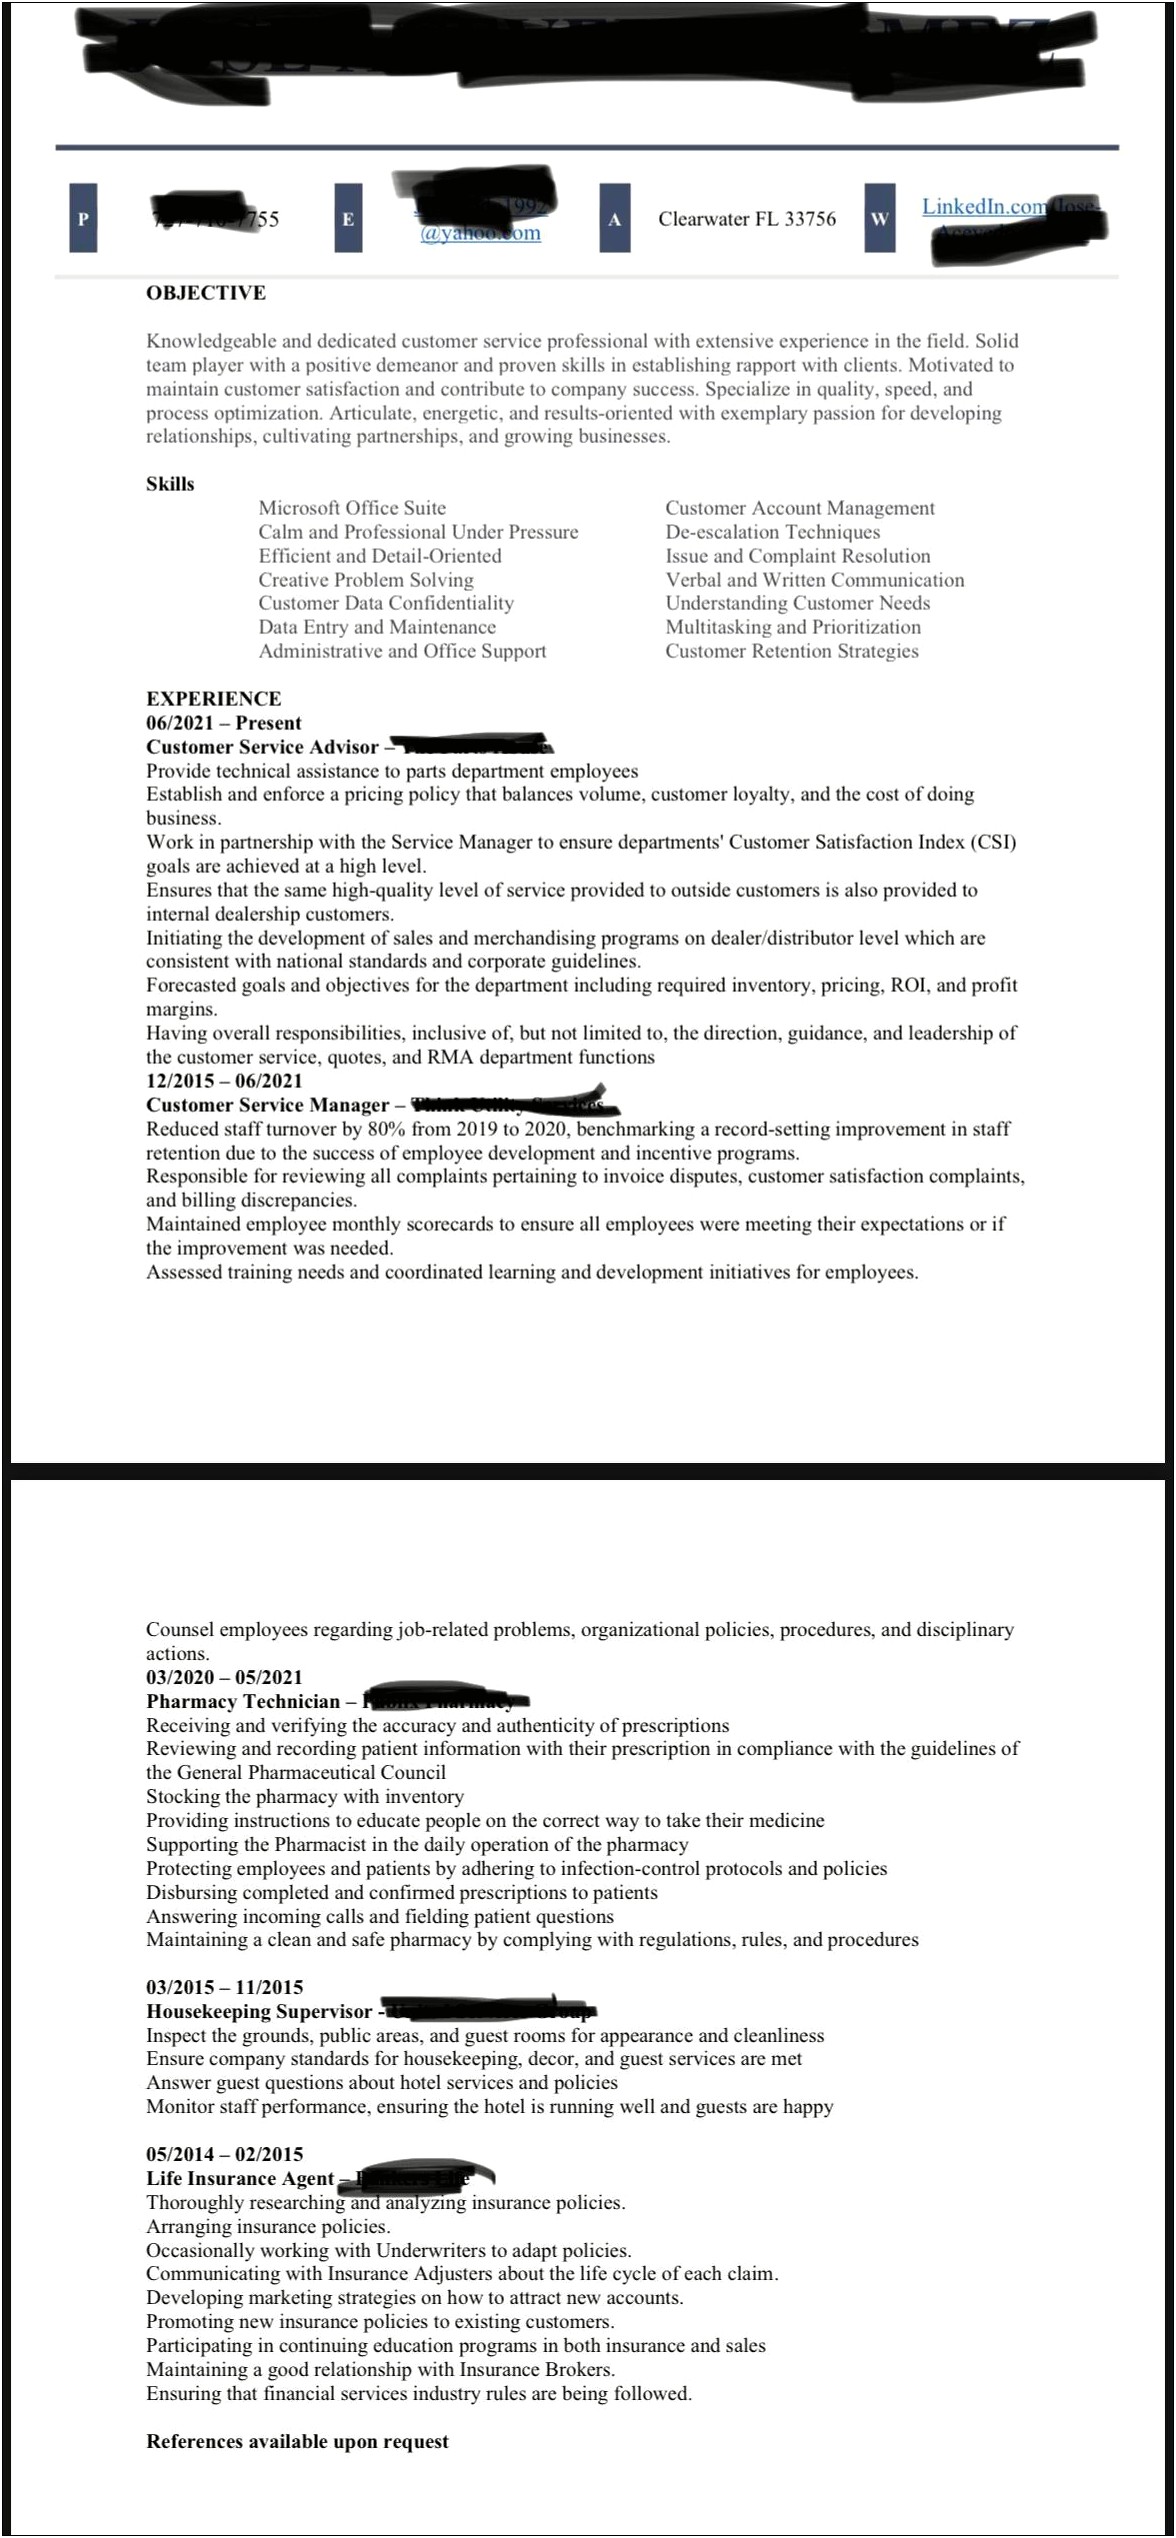 Recent Graduate Resume Examples Reddit